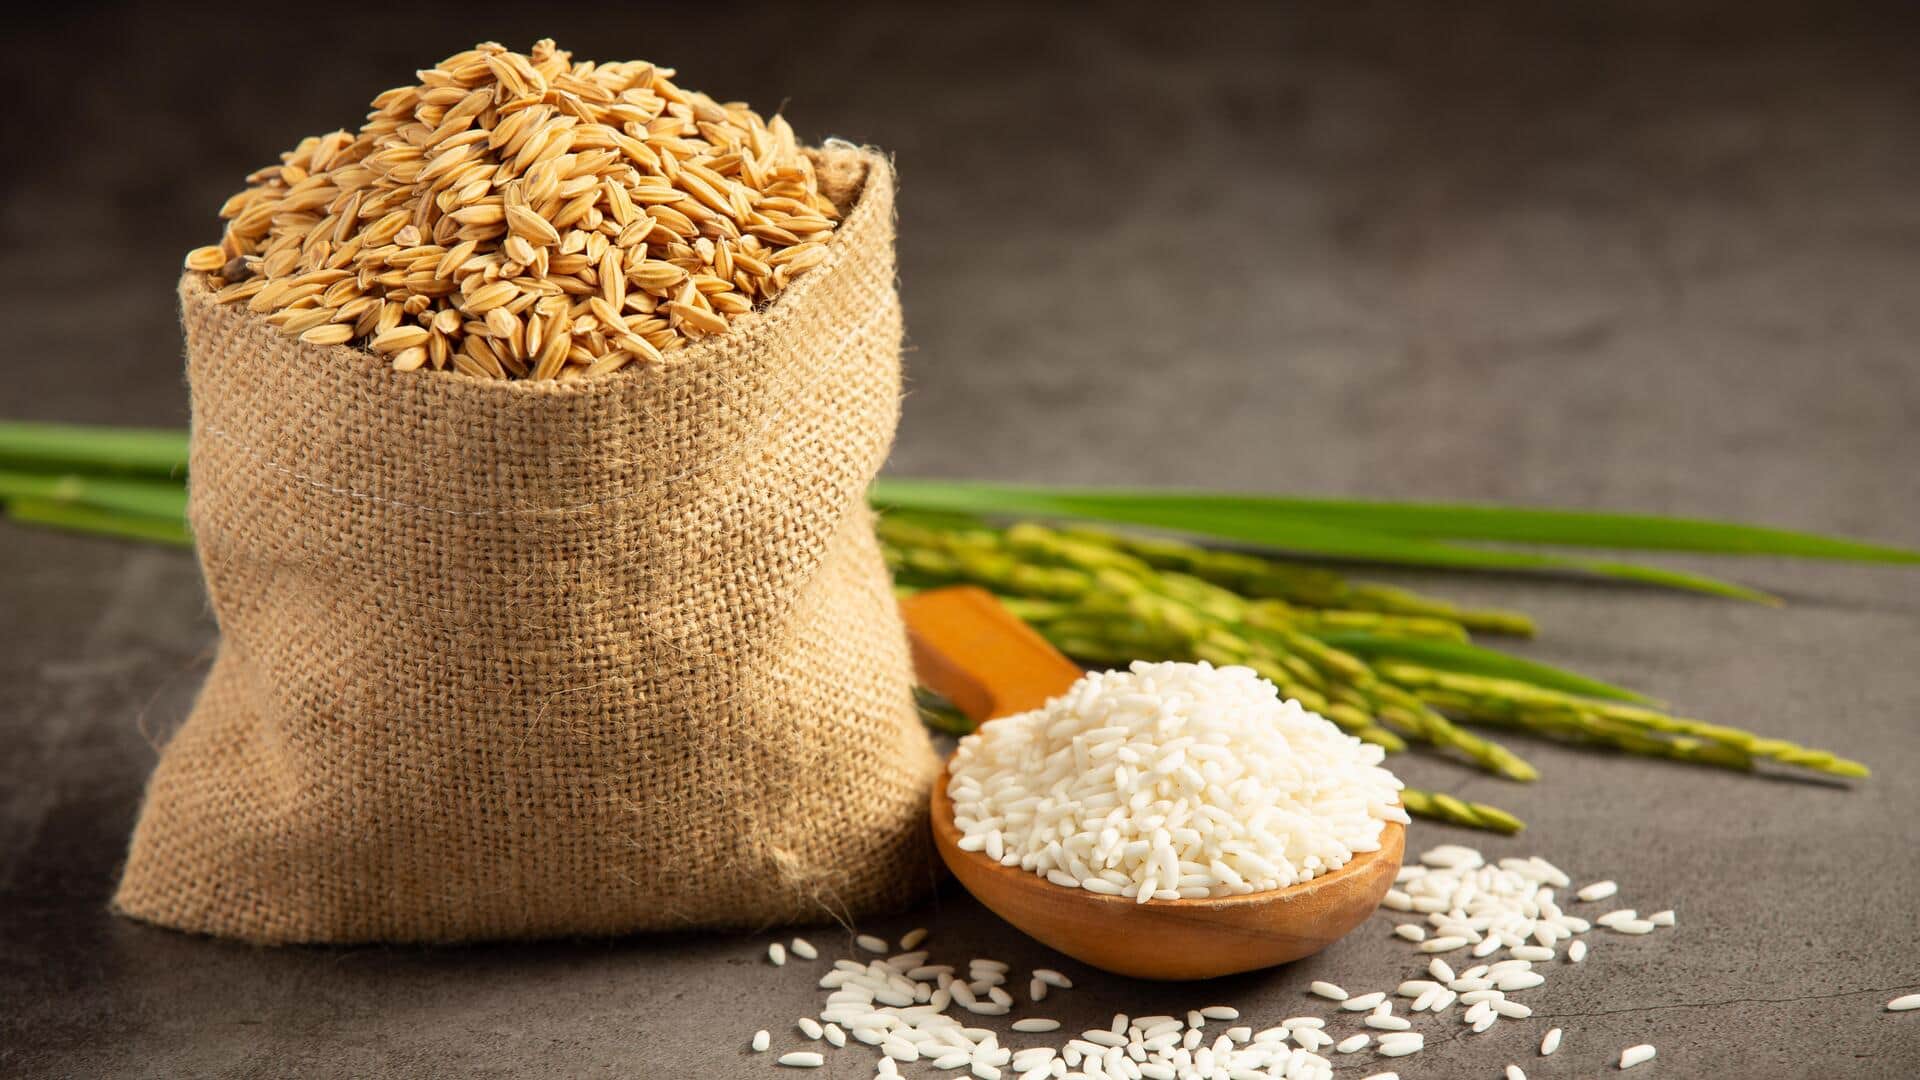 7 देशों को गैर-बासमती चावल निर्यात करेगी सरकार, चीनी पर लगी रोक को आगे बढ़ाया